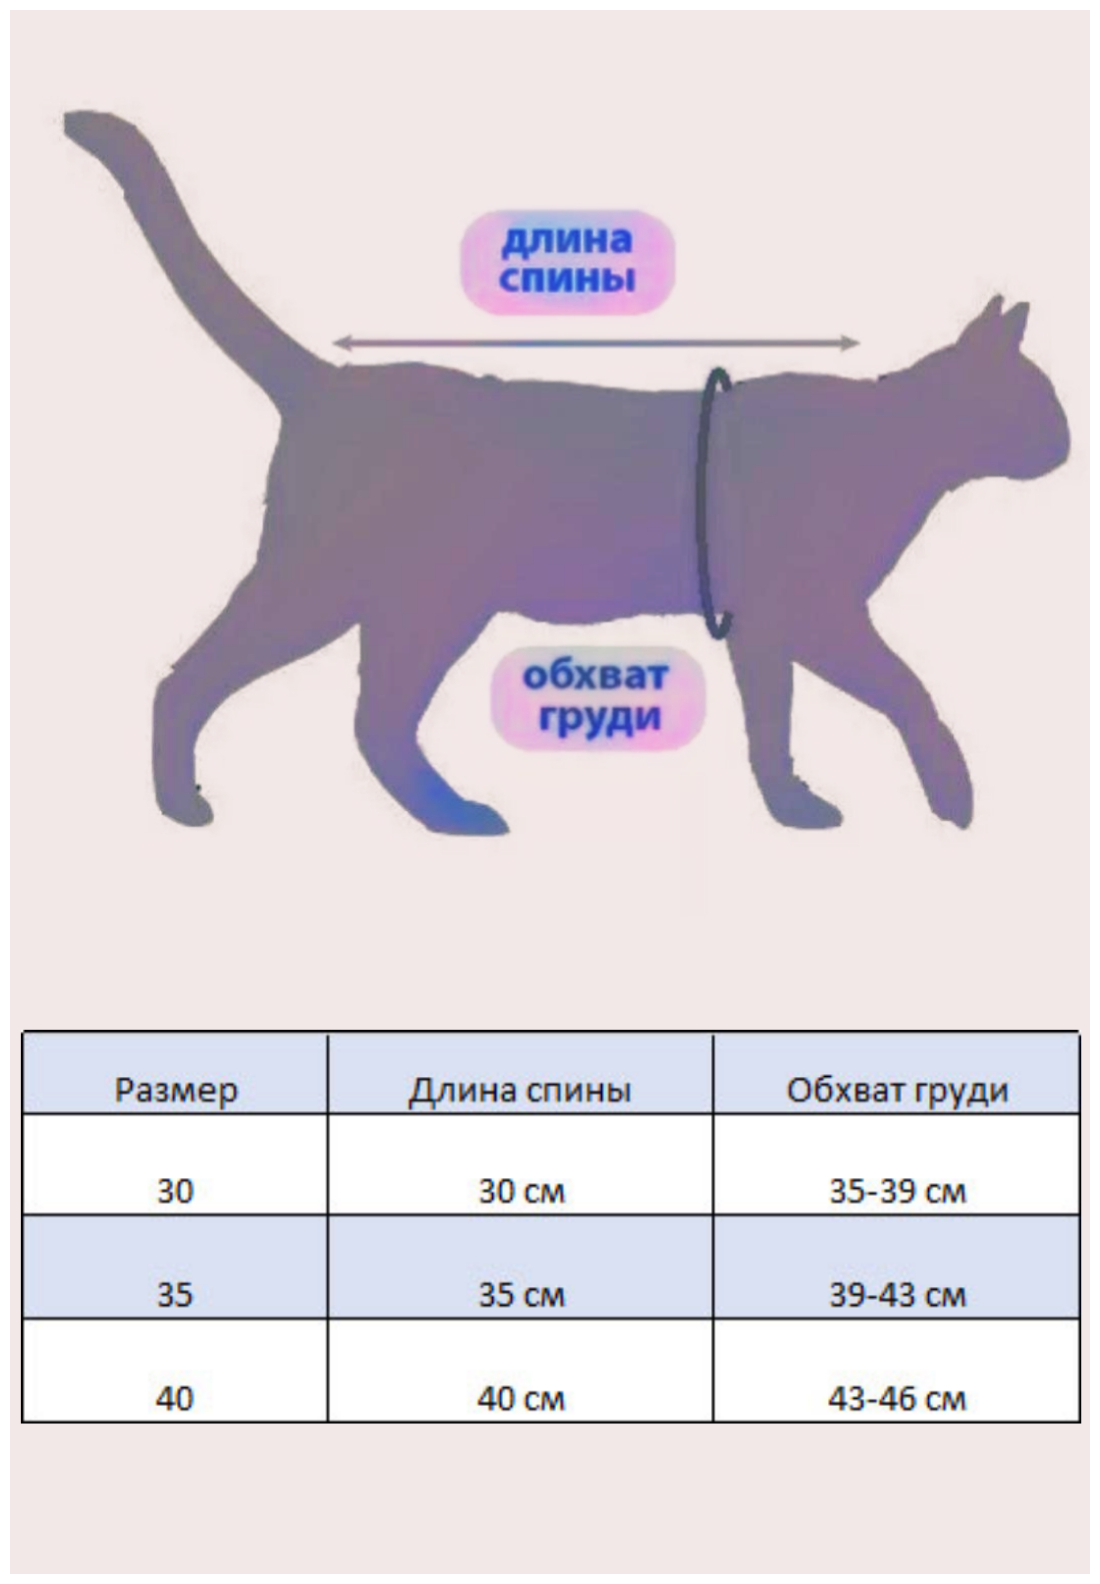 Свитшот для кошек, размер 30 ( длина спины 30см), цвет индиго / толстовка свитшот свитер для кошек сфинкс / одежда для животных - фотография № 2